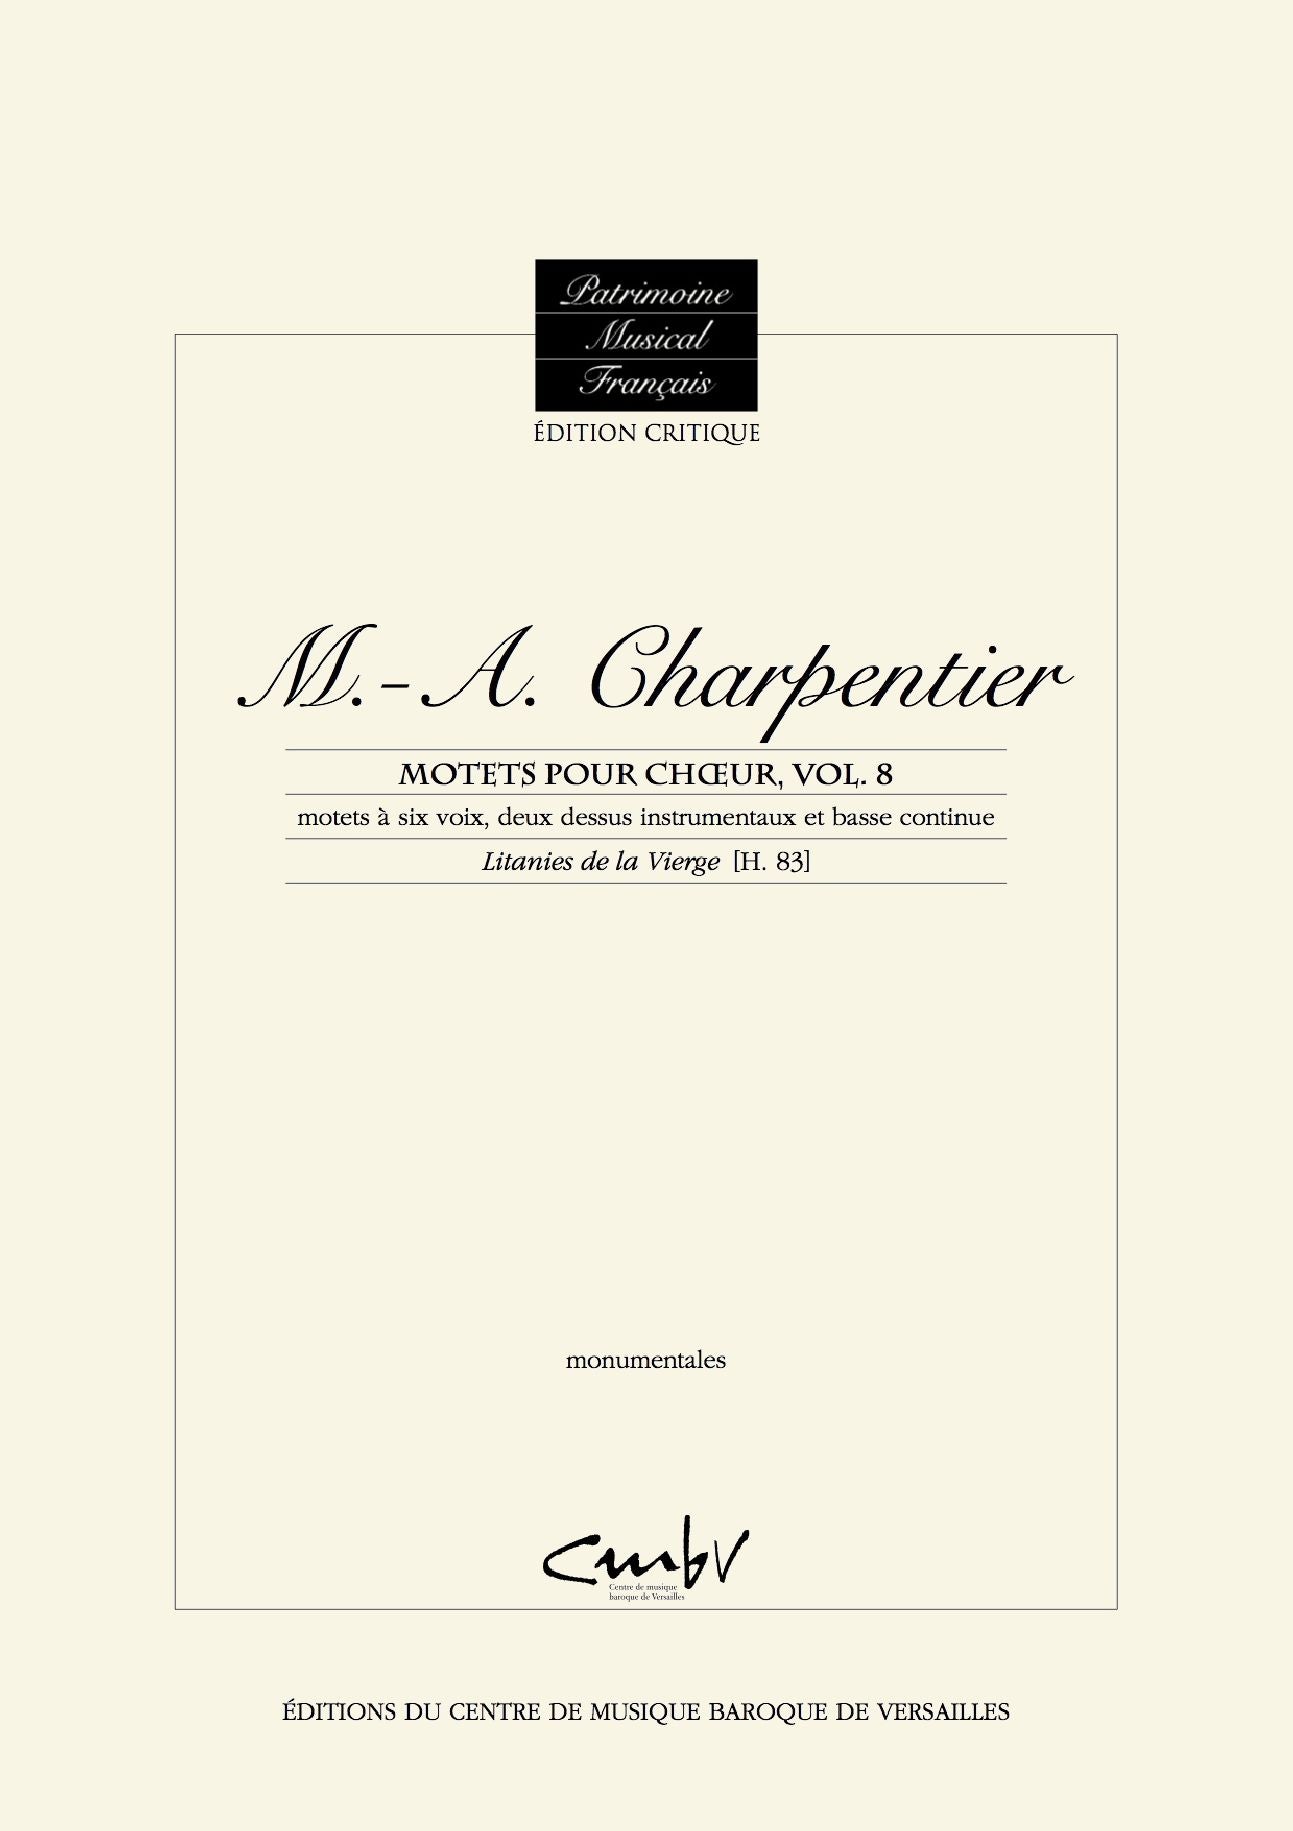 Charpentier: Litanies de la Vierge, H. 83